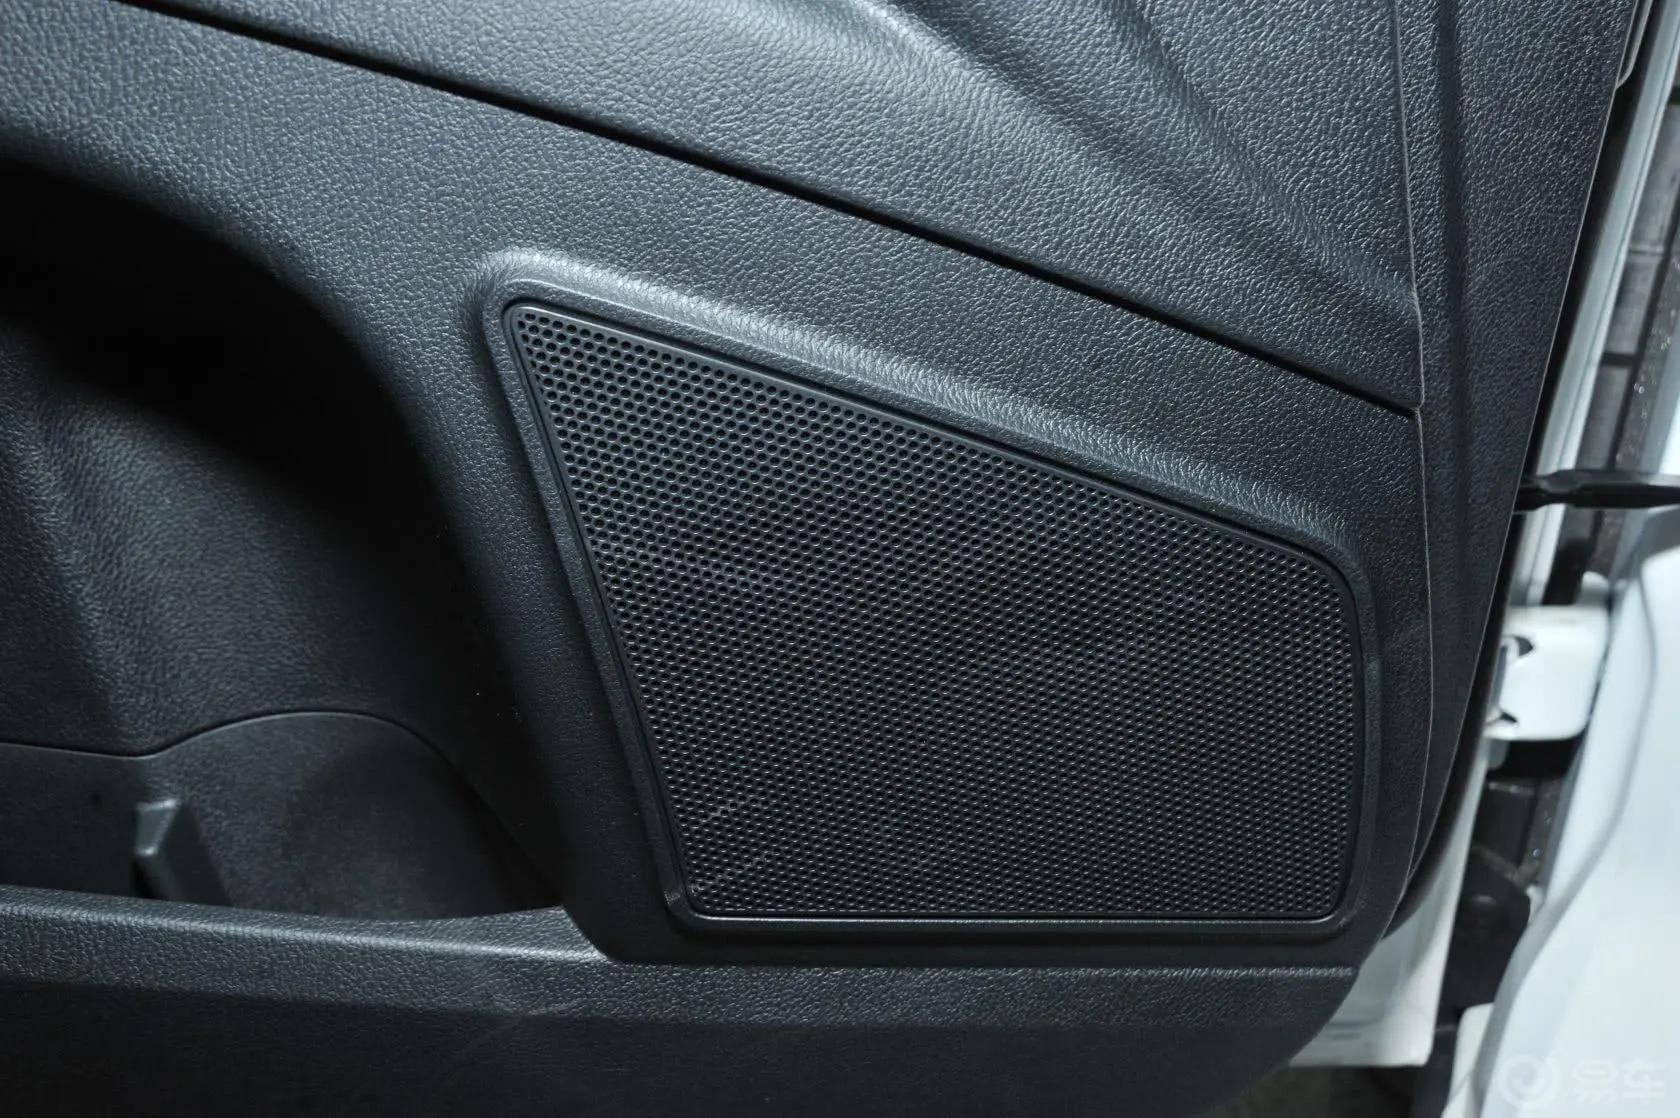 奔腾X802.0L 自动 舒适 周年纪念型内饰